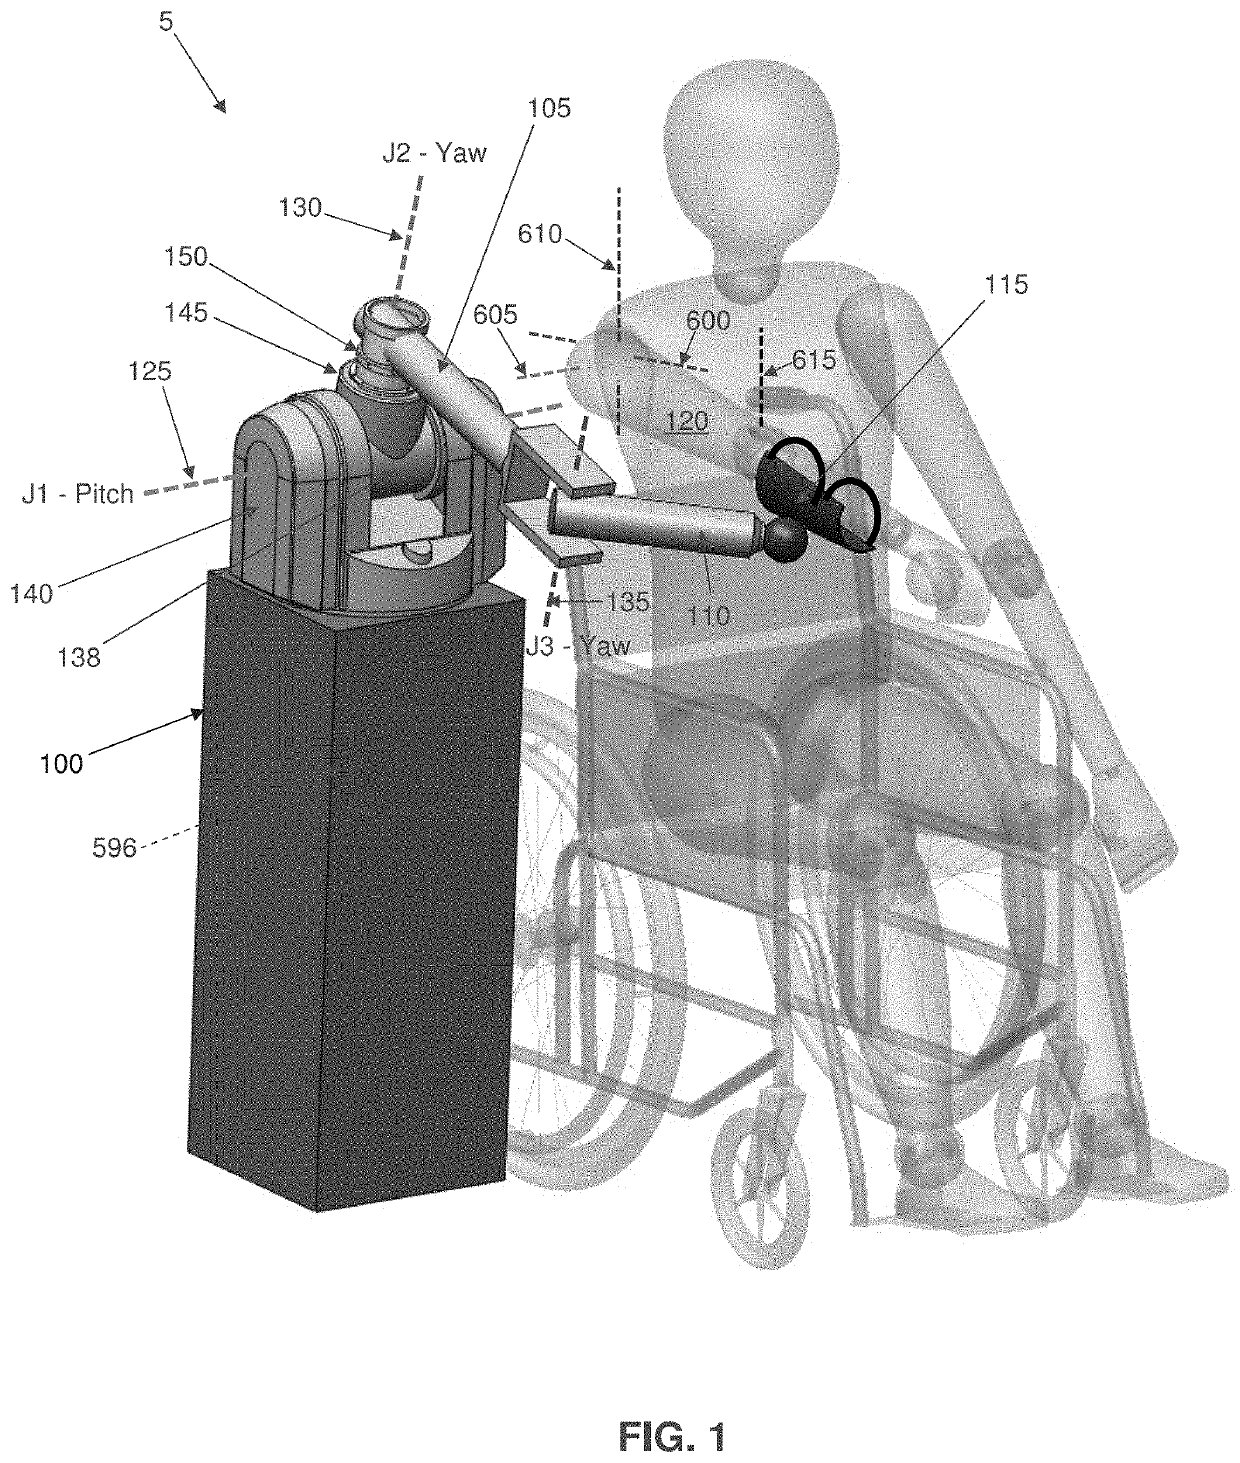 Multi-active-axis, non-exoskeletal robotic rehabilitation device